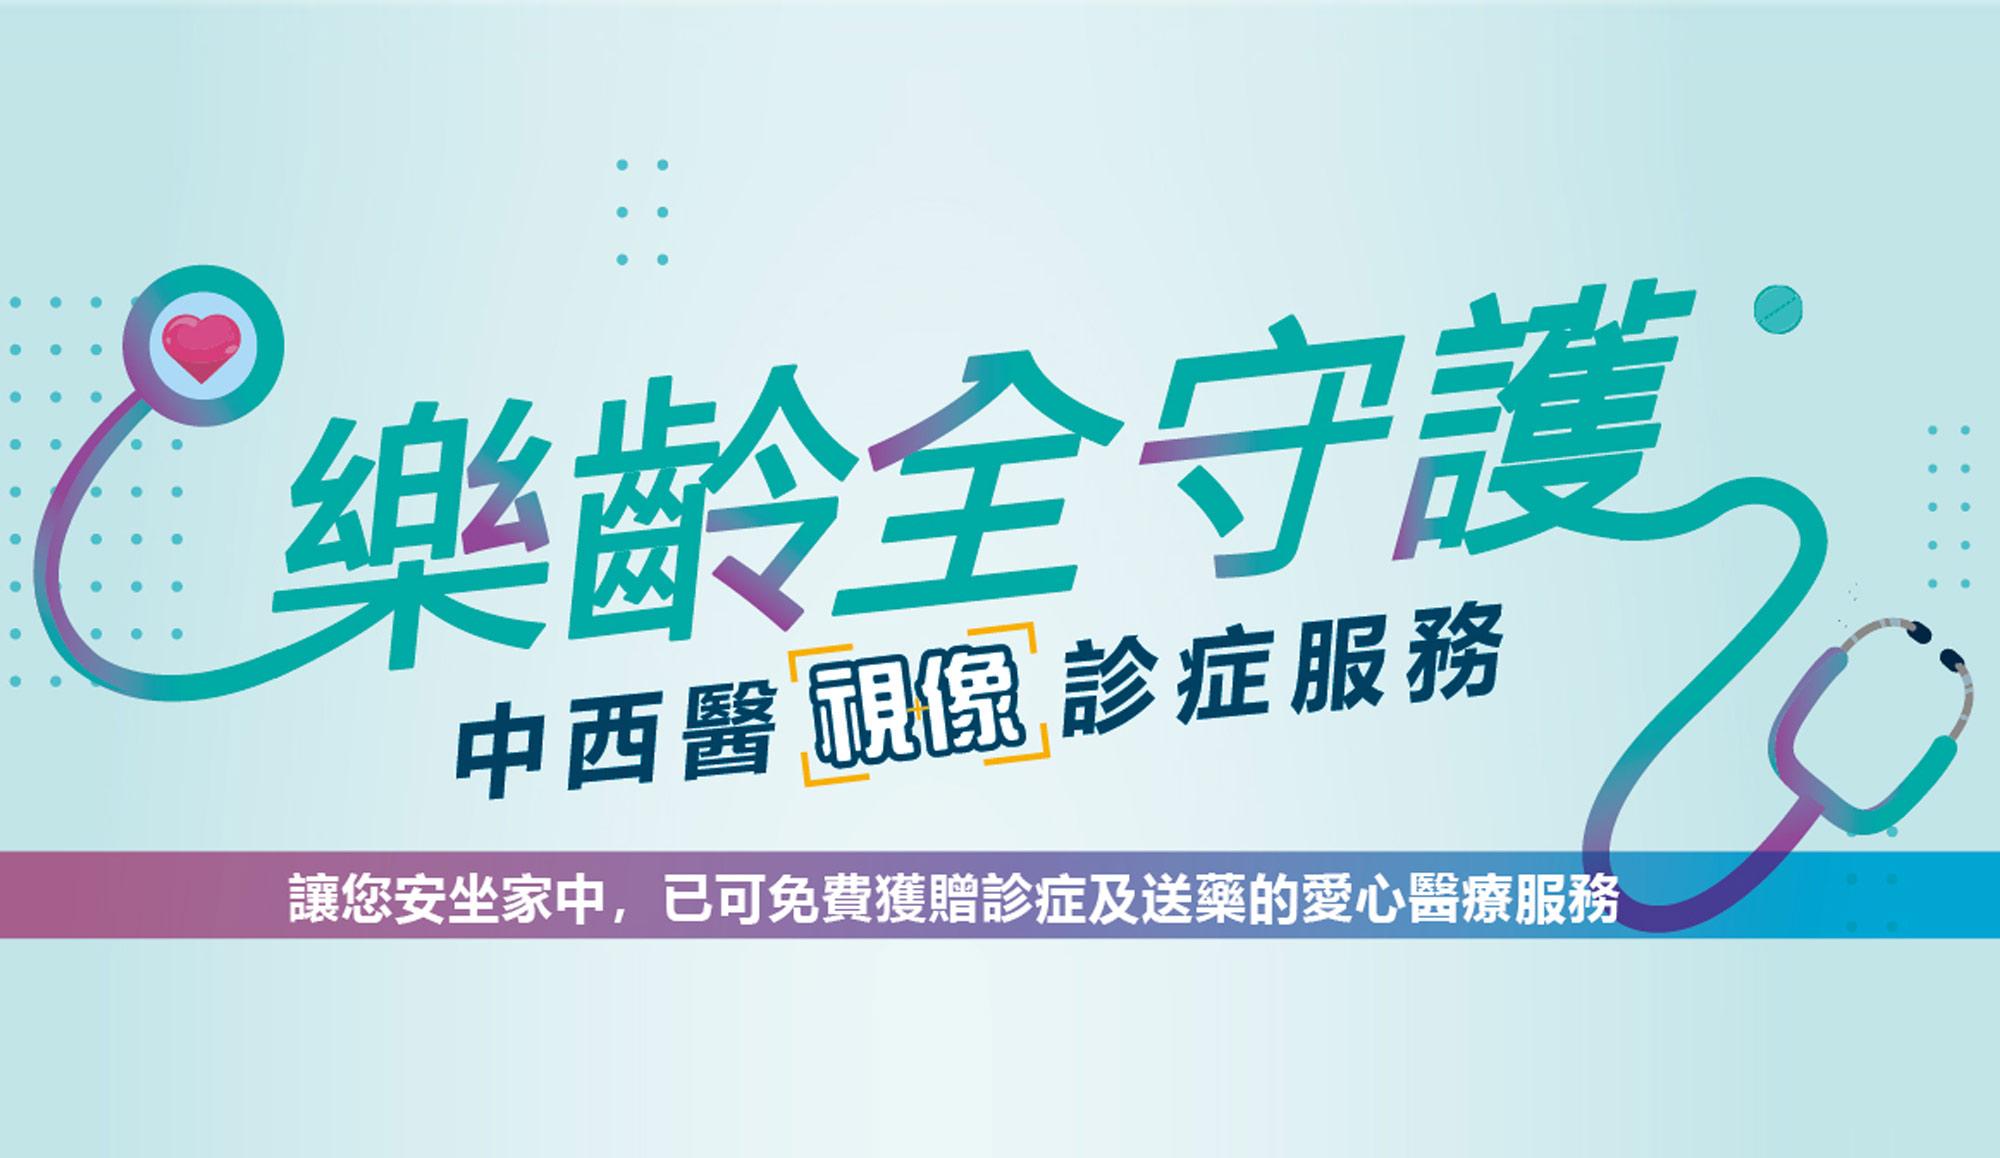 基督教家庭服务中心与宏利香港携手推出宏利「乐龄全守护」中西医视像诊症服务